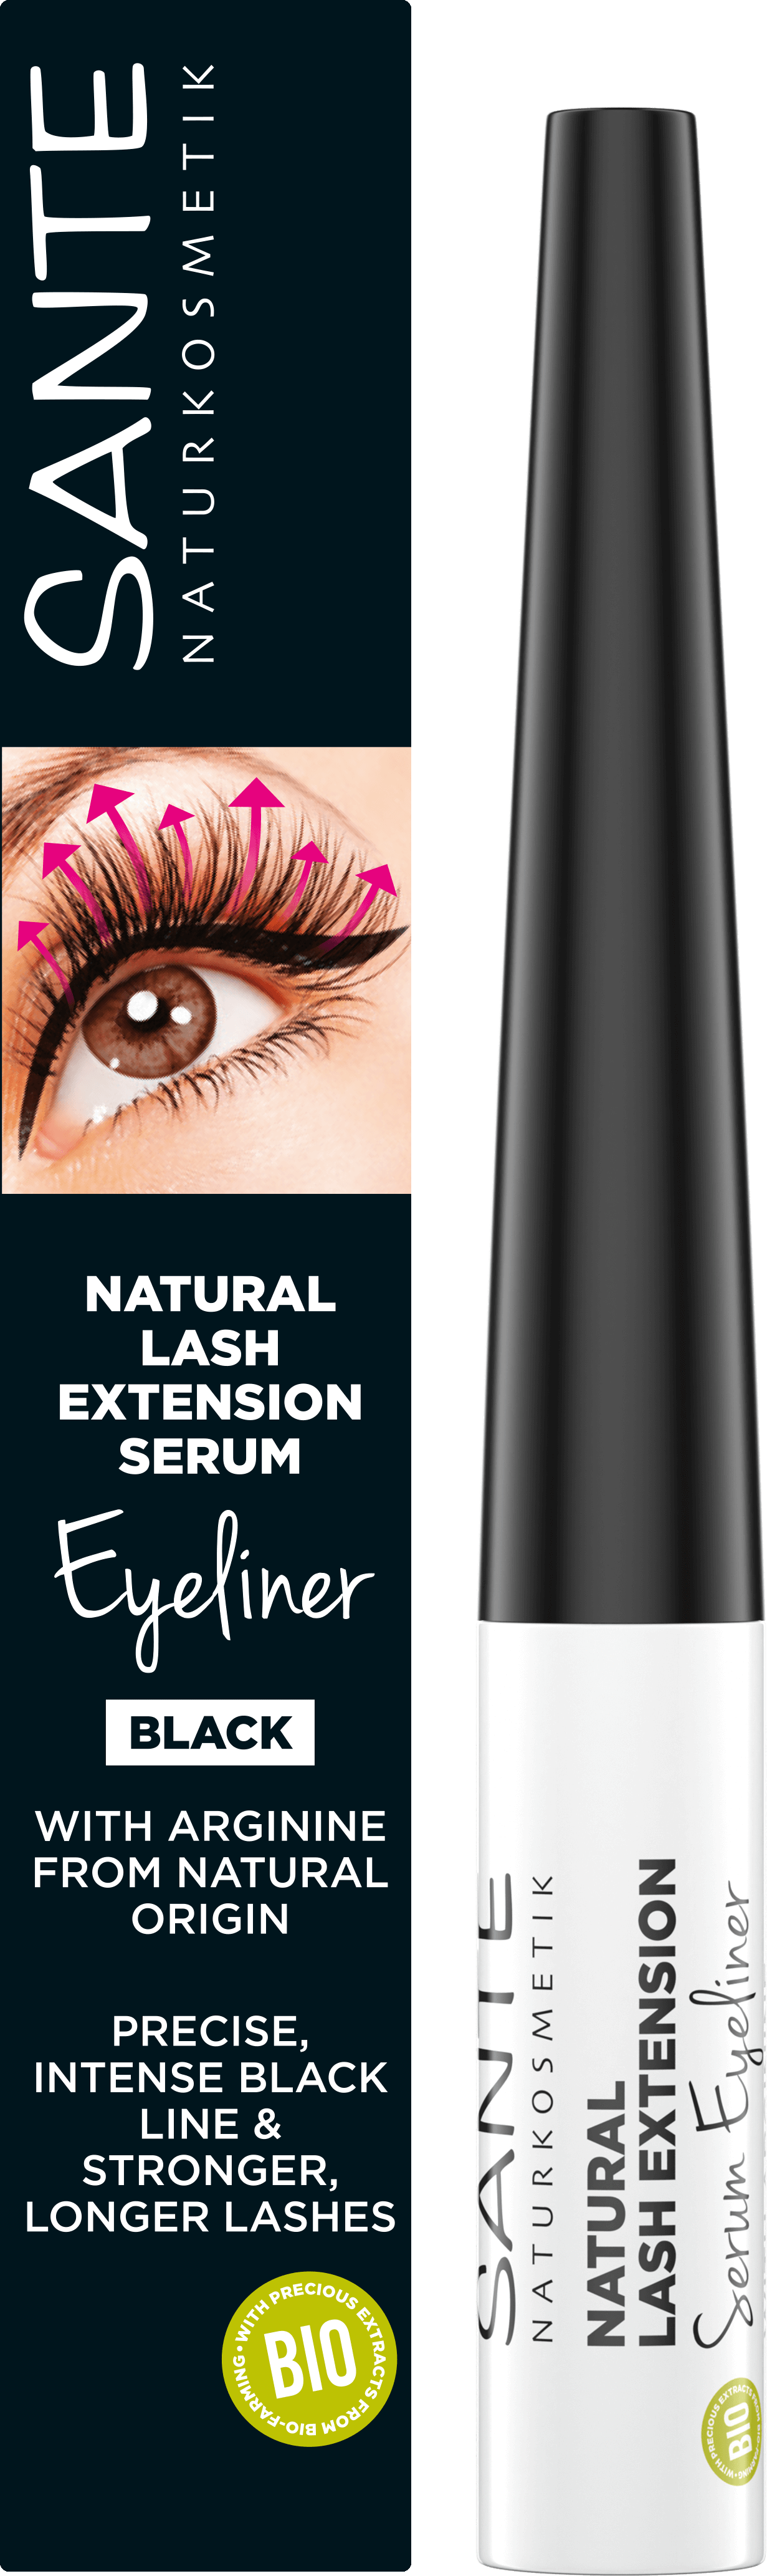 Natural Lash Extension Serum Naturkosmetik Eyeliner SANTE 